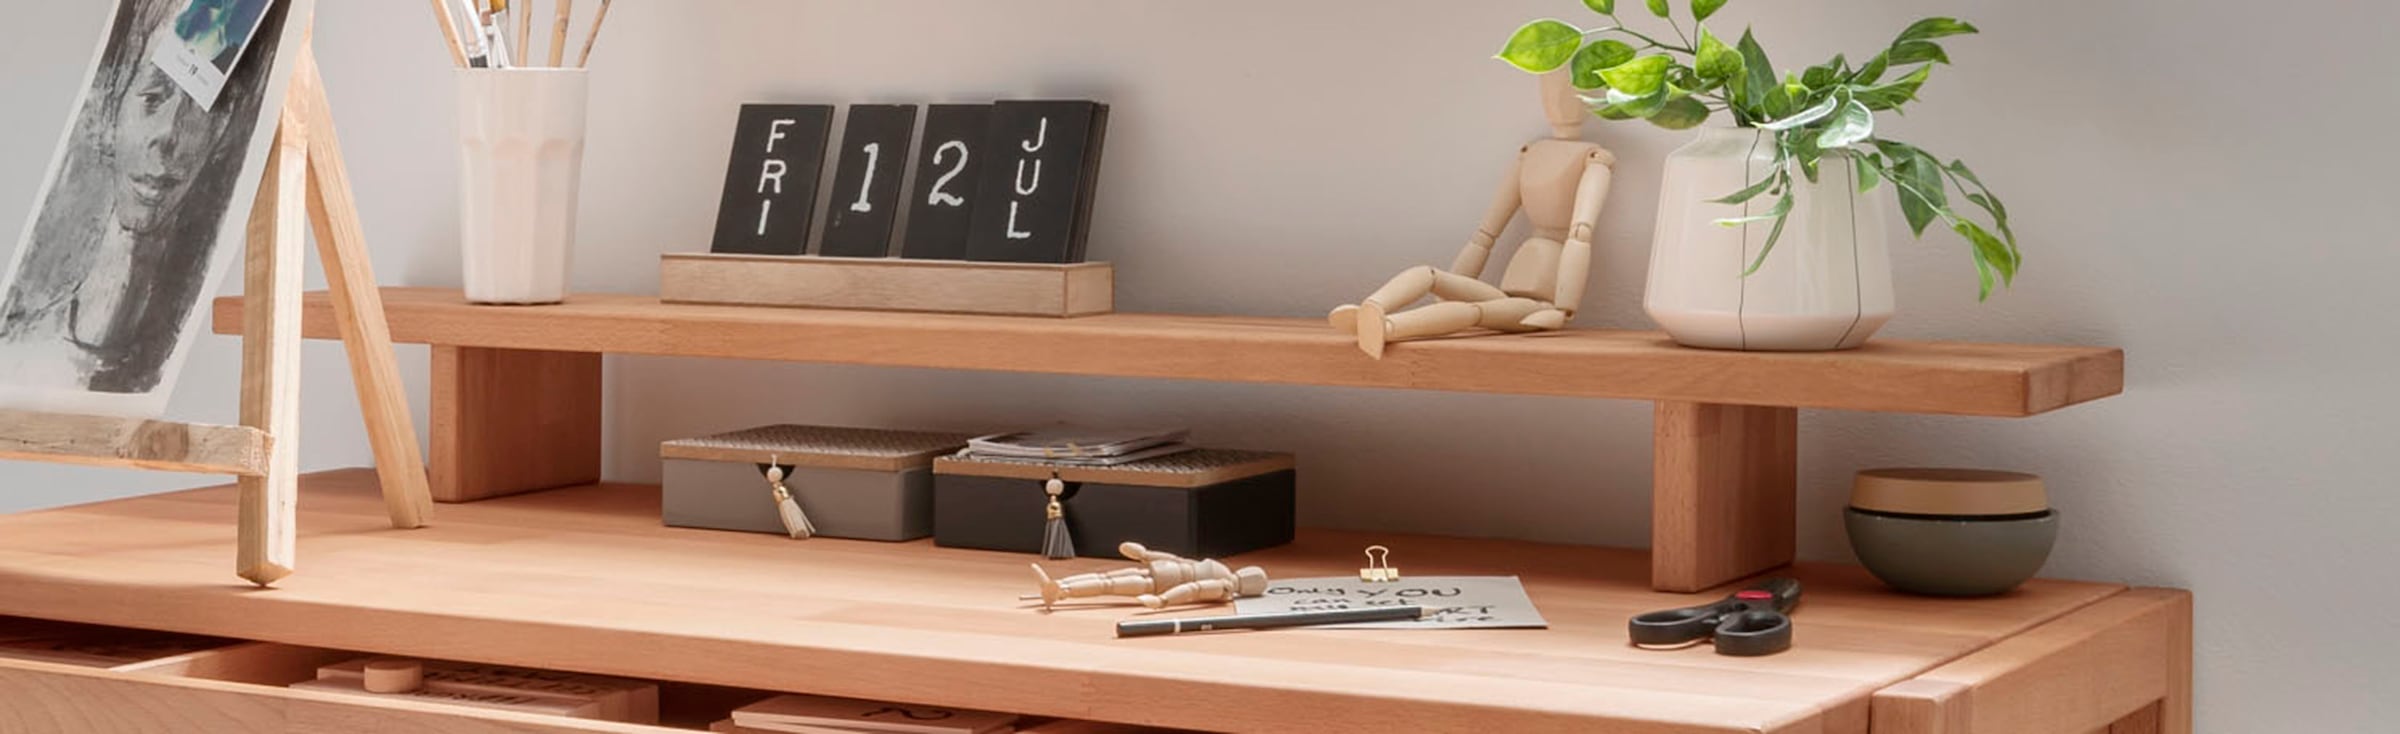 Home affaire Tischaufsatz »Dura«, aus massivem Wildeichenholz, passend zum  Schreibtisch Serienname Dura auf Raten bestellen